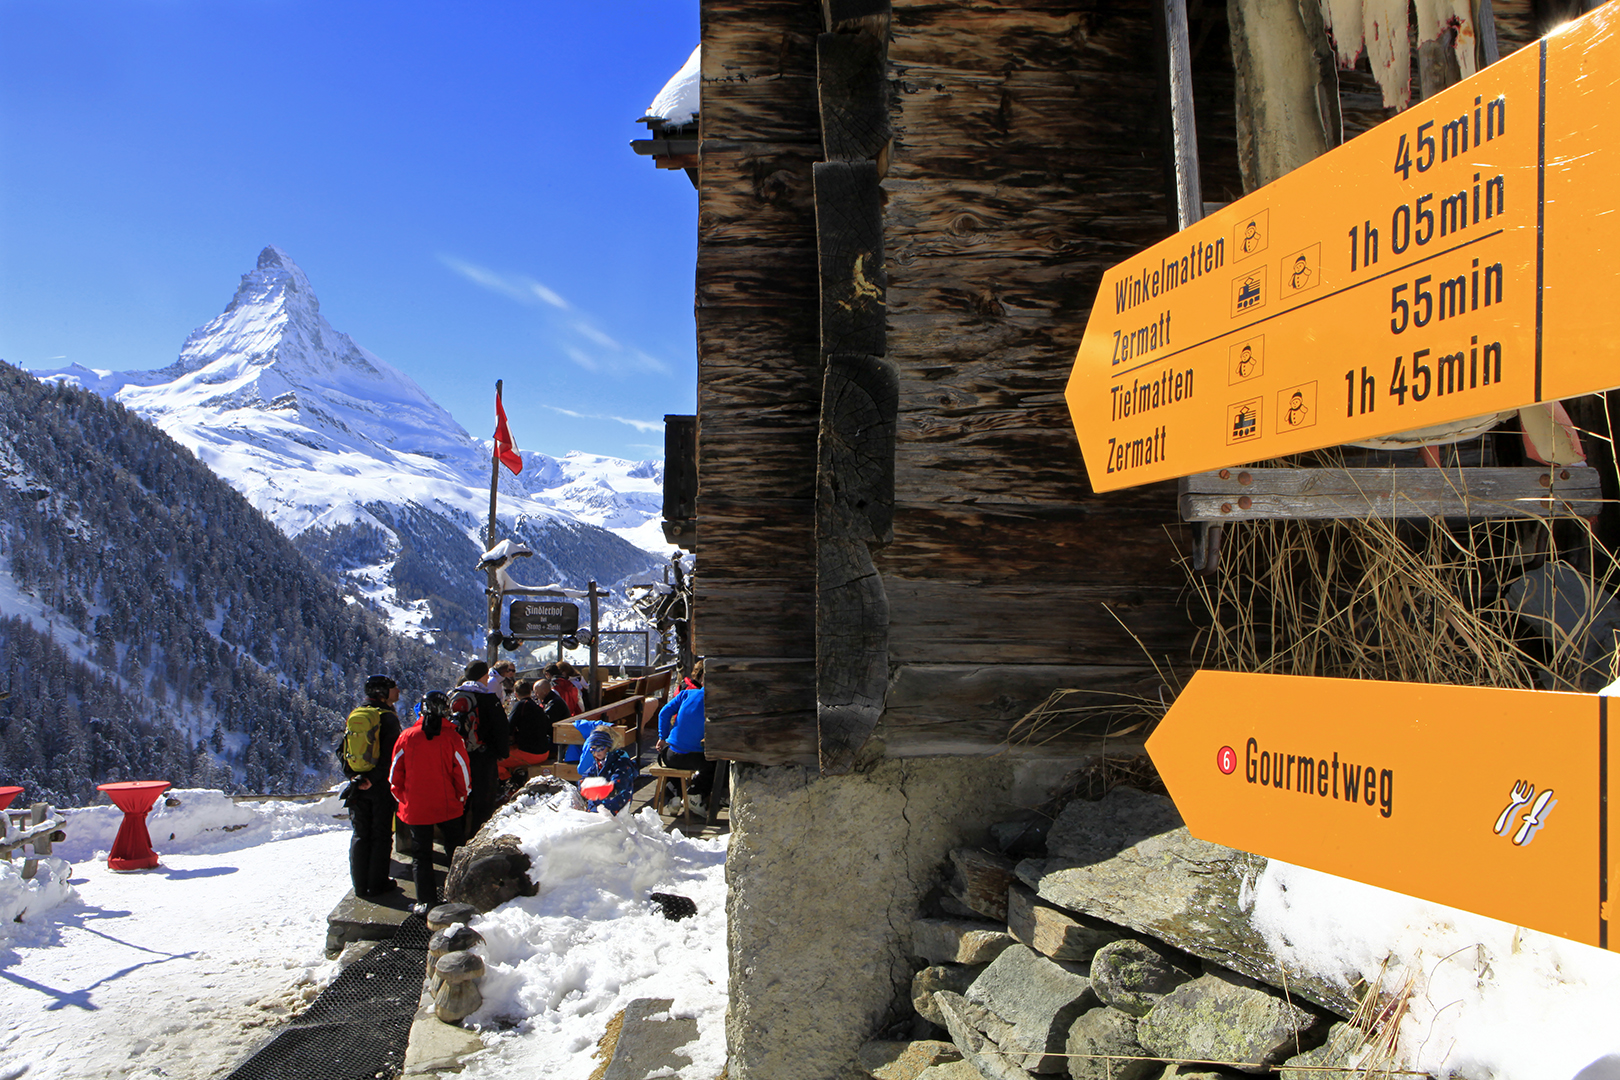  Weg zum Gornergrat, Zermatt. Schweiz 